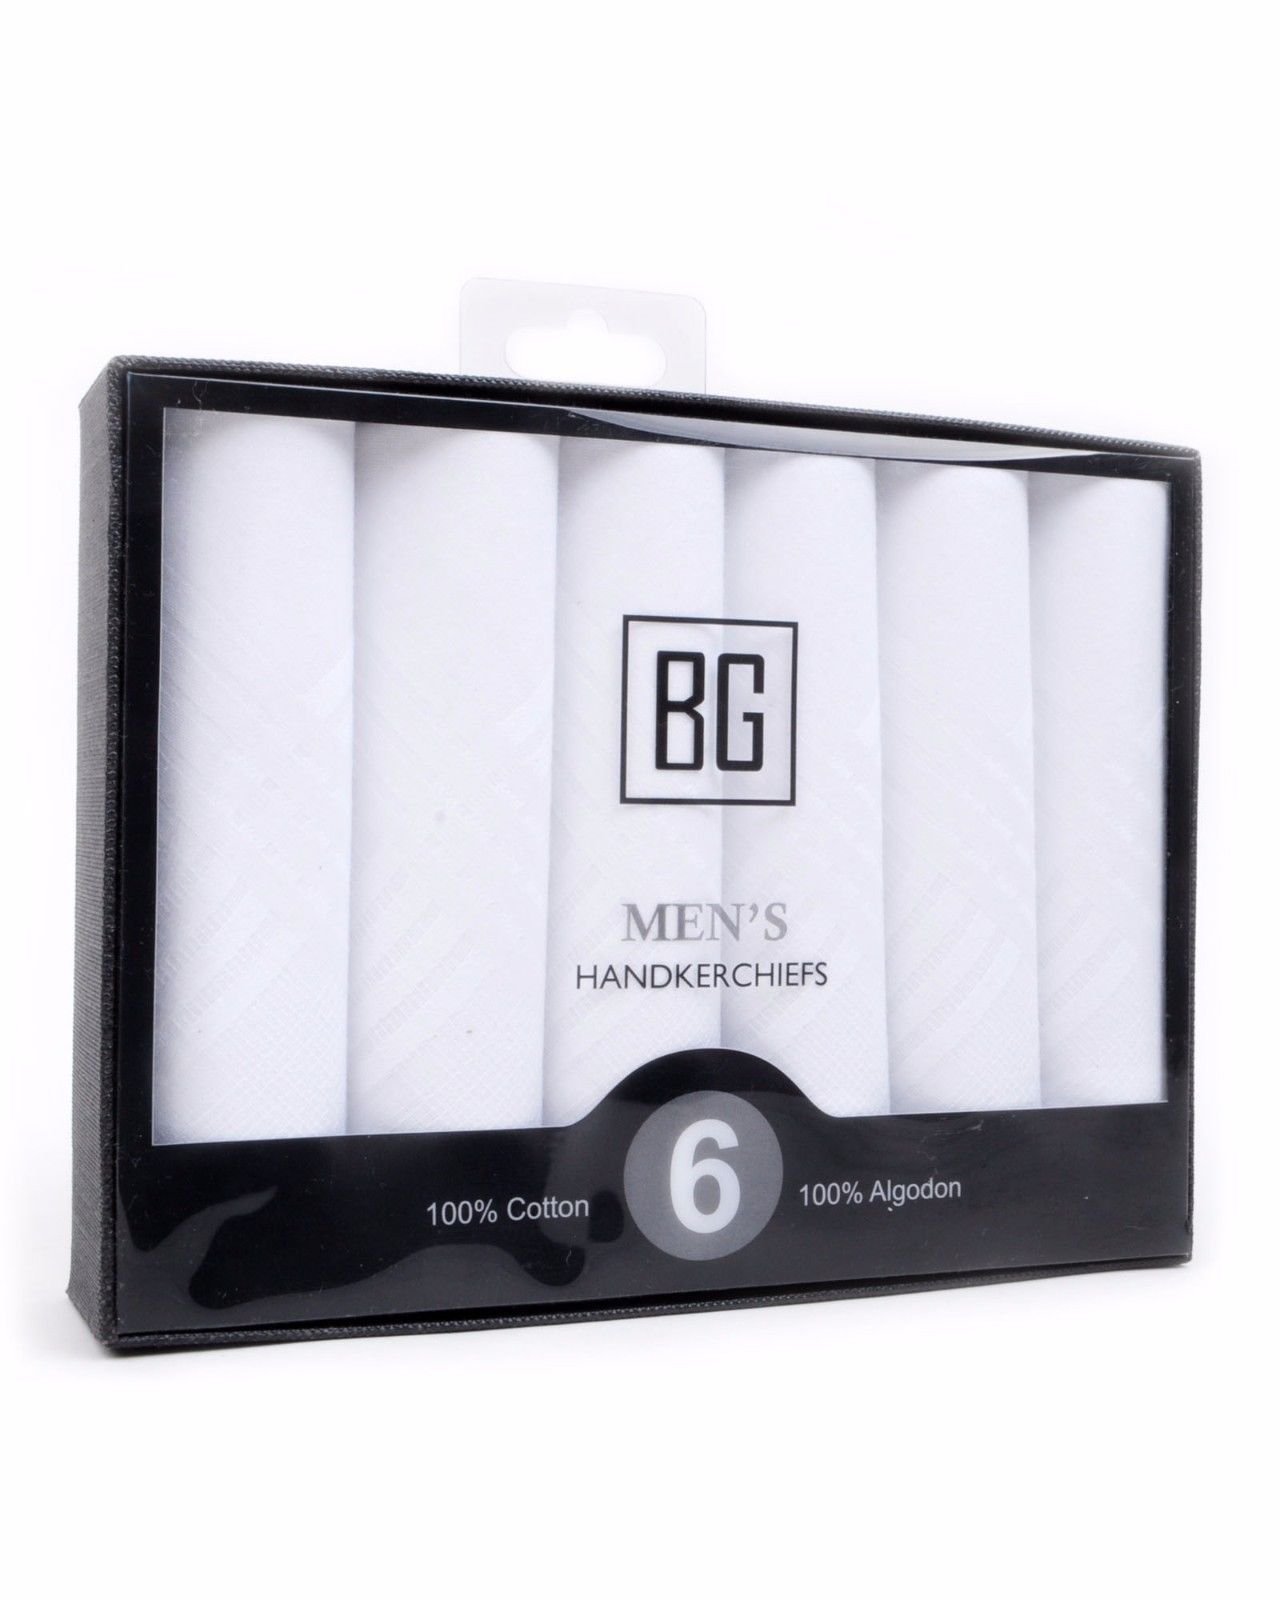 BGHB BG Men/'s White 100/% Cotton Soft Stylish Hanky Handkerchief Set